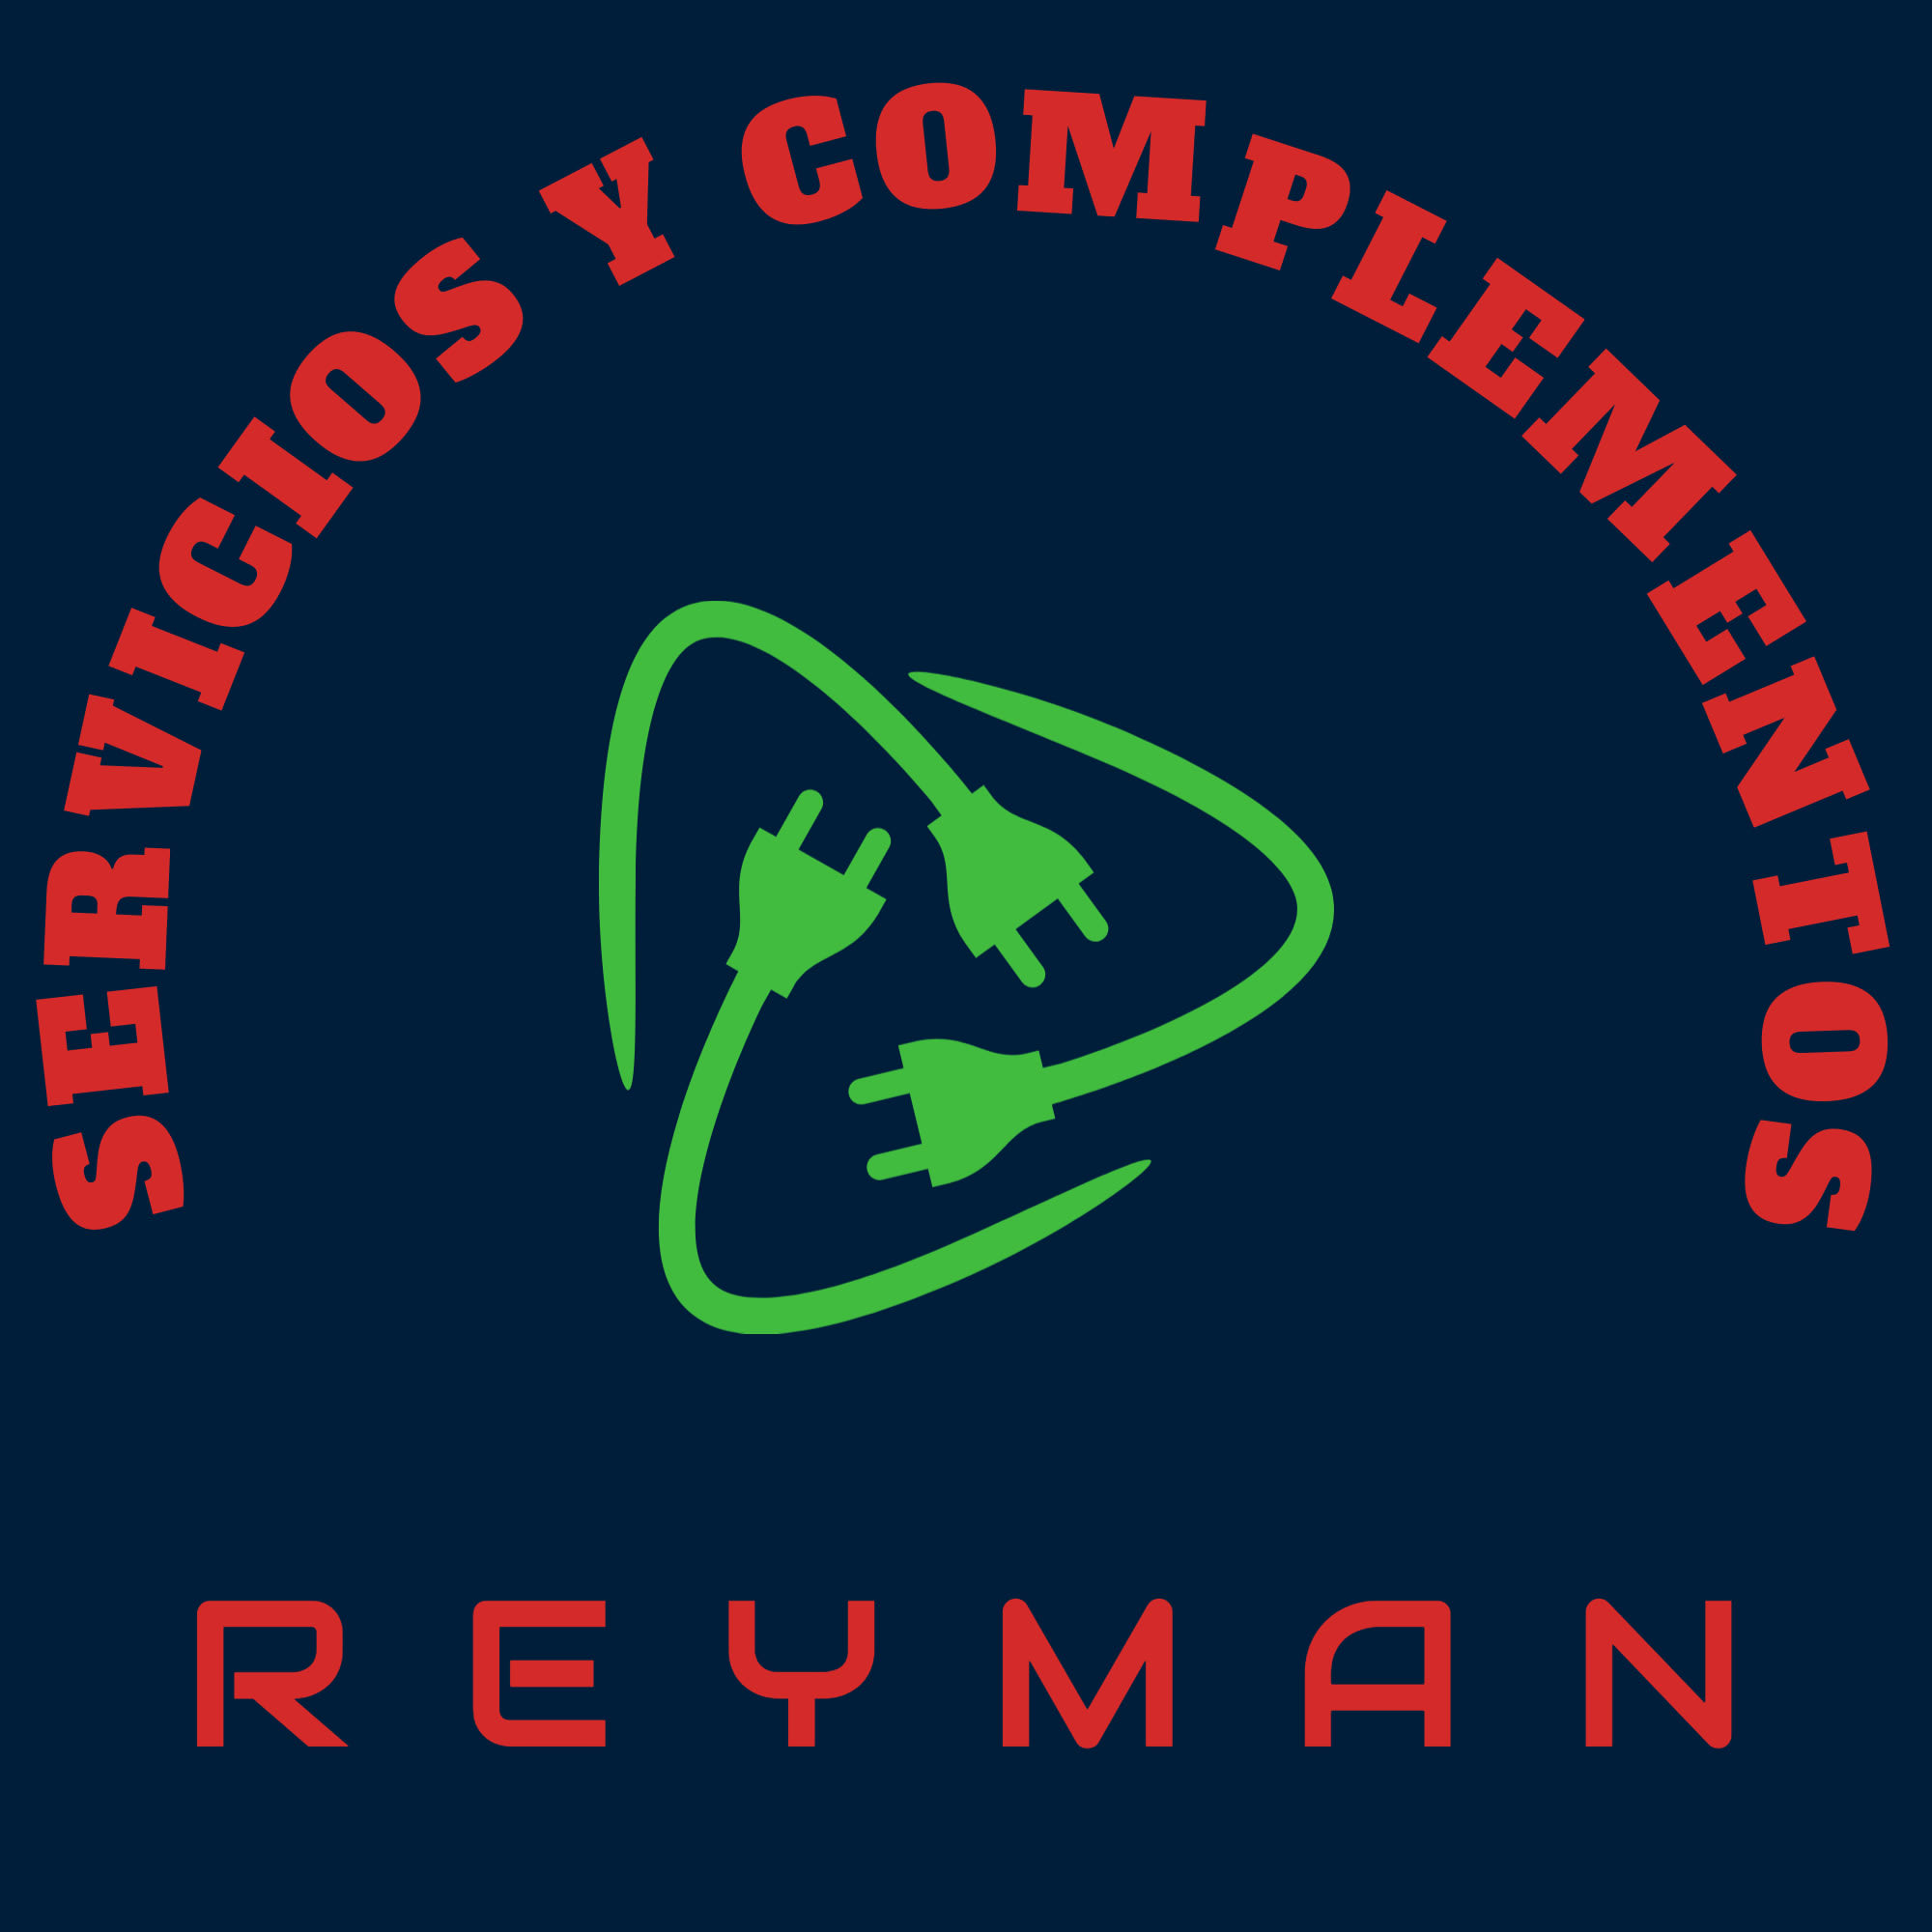 Servicios y complementos REYMAN